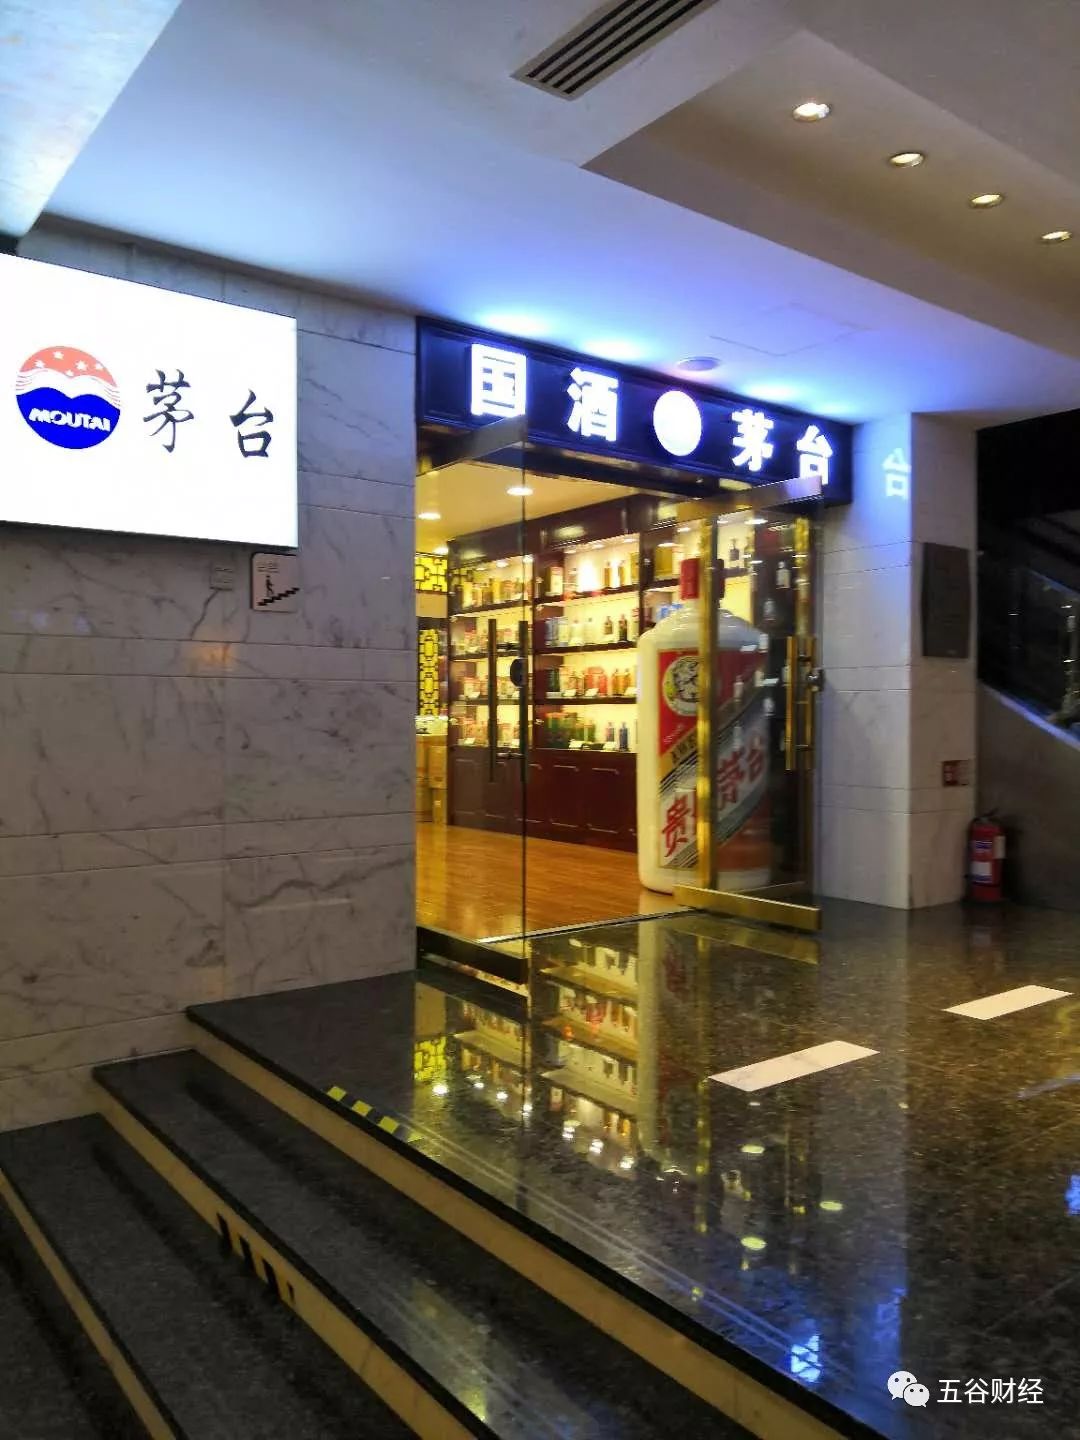 原创中金下调贵州茅台目标价个别门店仍在宣称国酒涉嫌违规